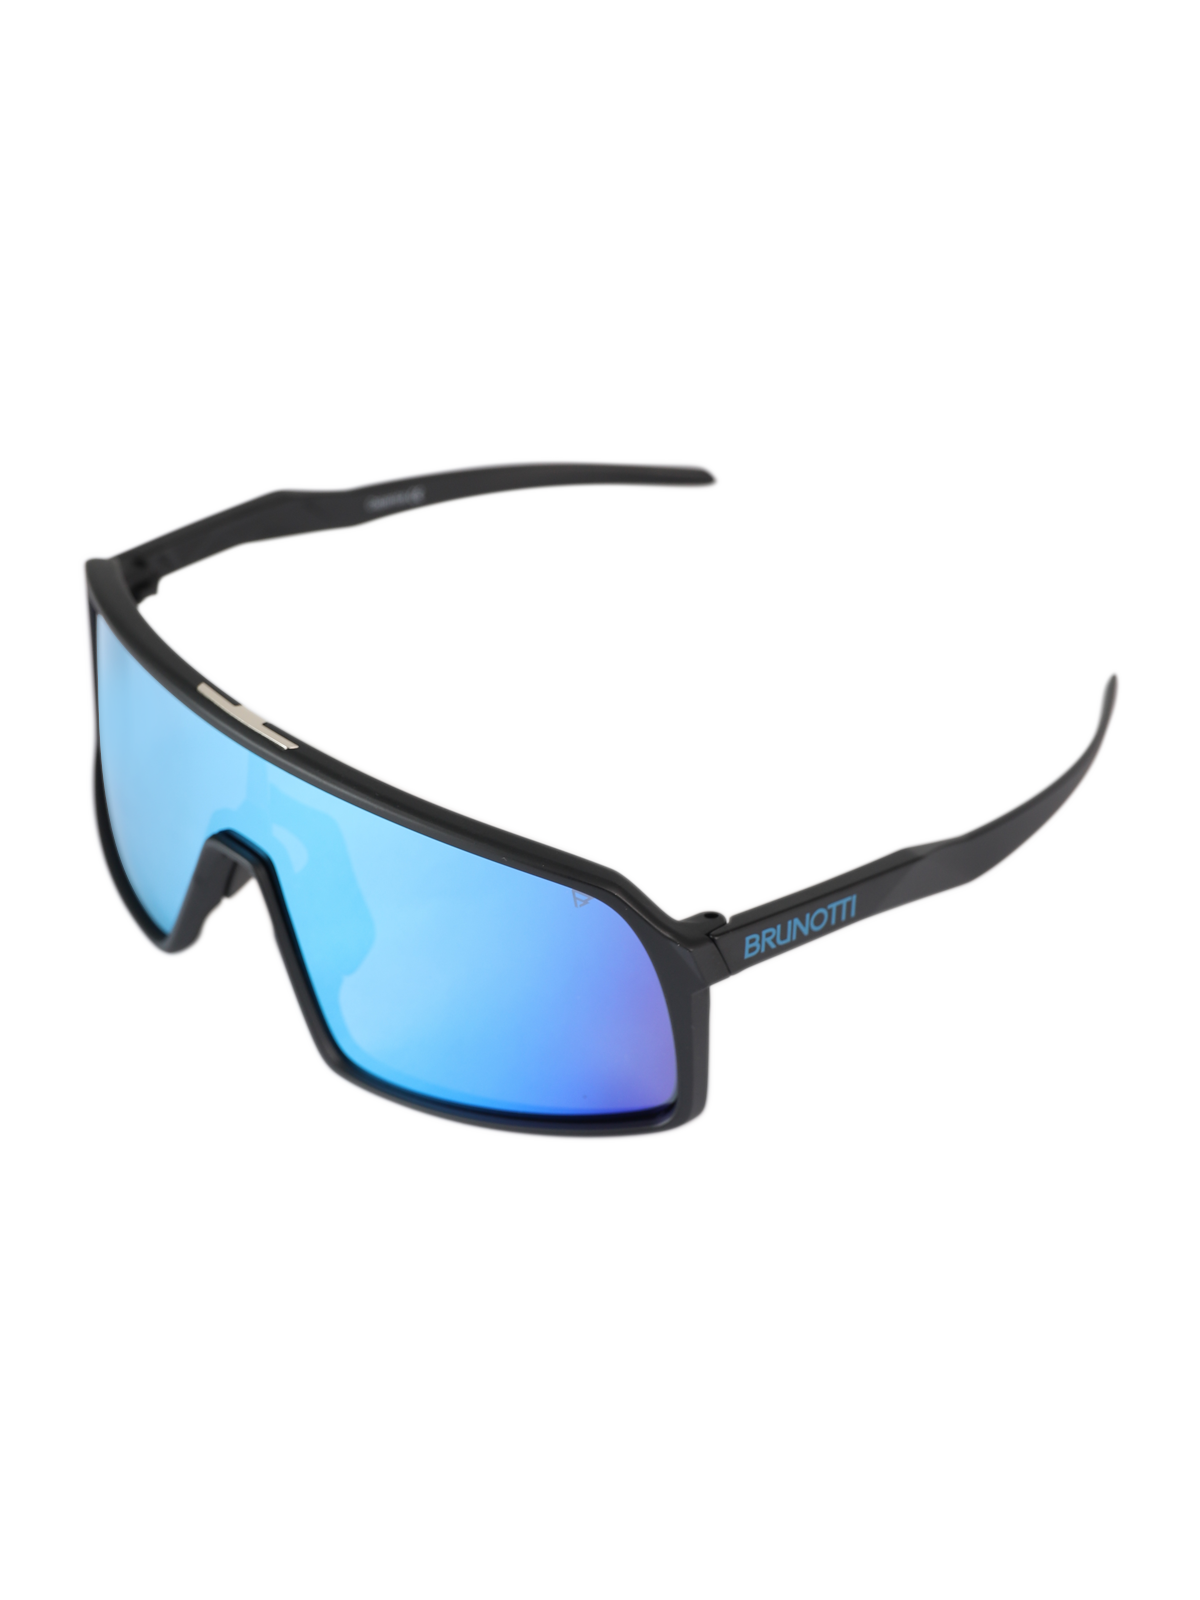 Caparica Unisex Sonnenbrille | Blau